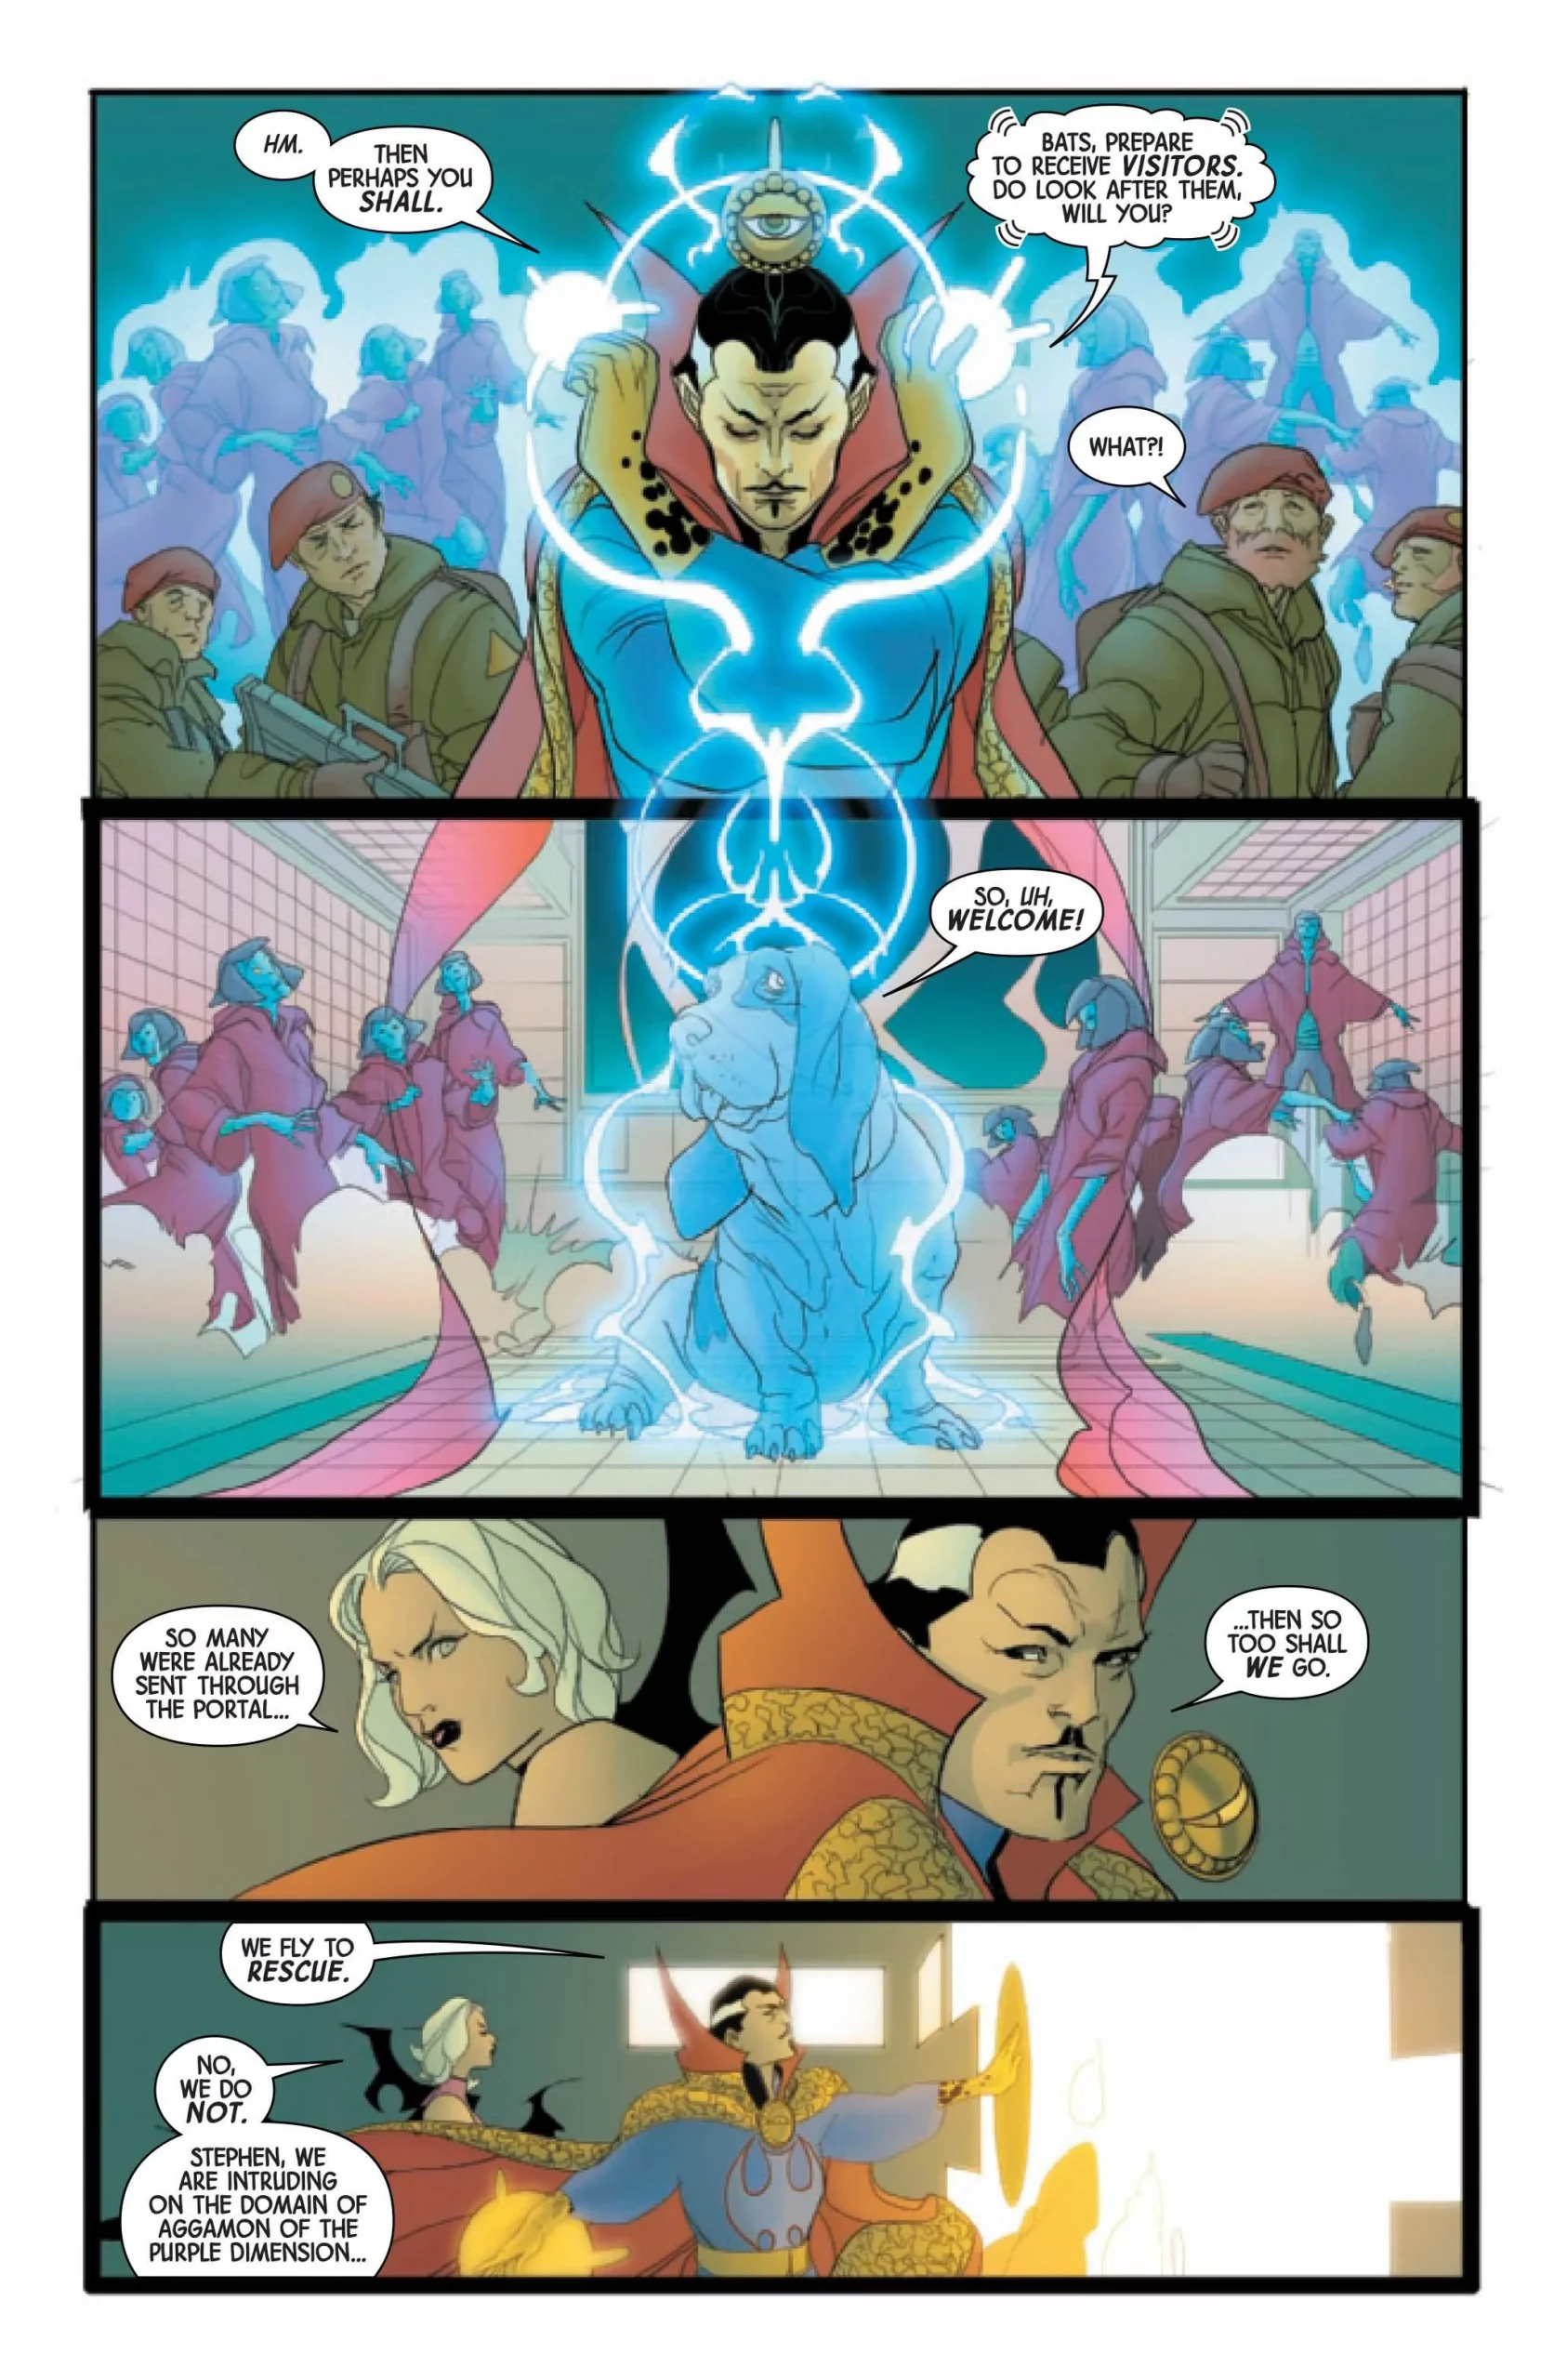 Doutor Estranho – Herói sofre mais uma grande e surpreendente mudança em HQ  da Marvel!